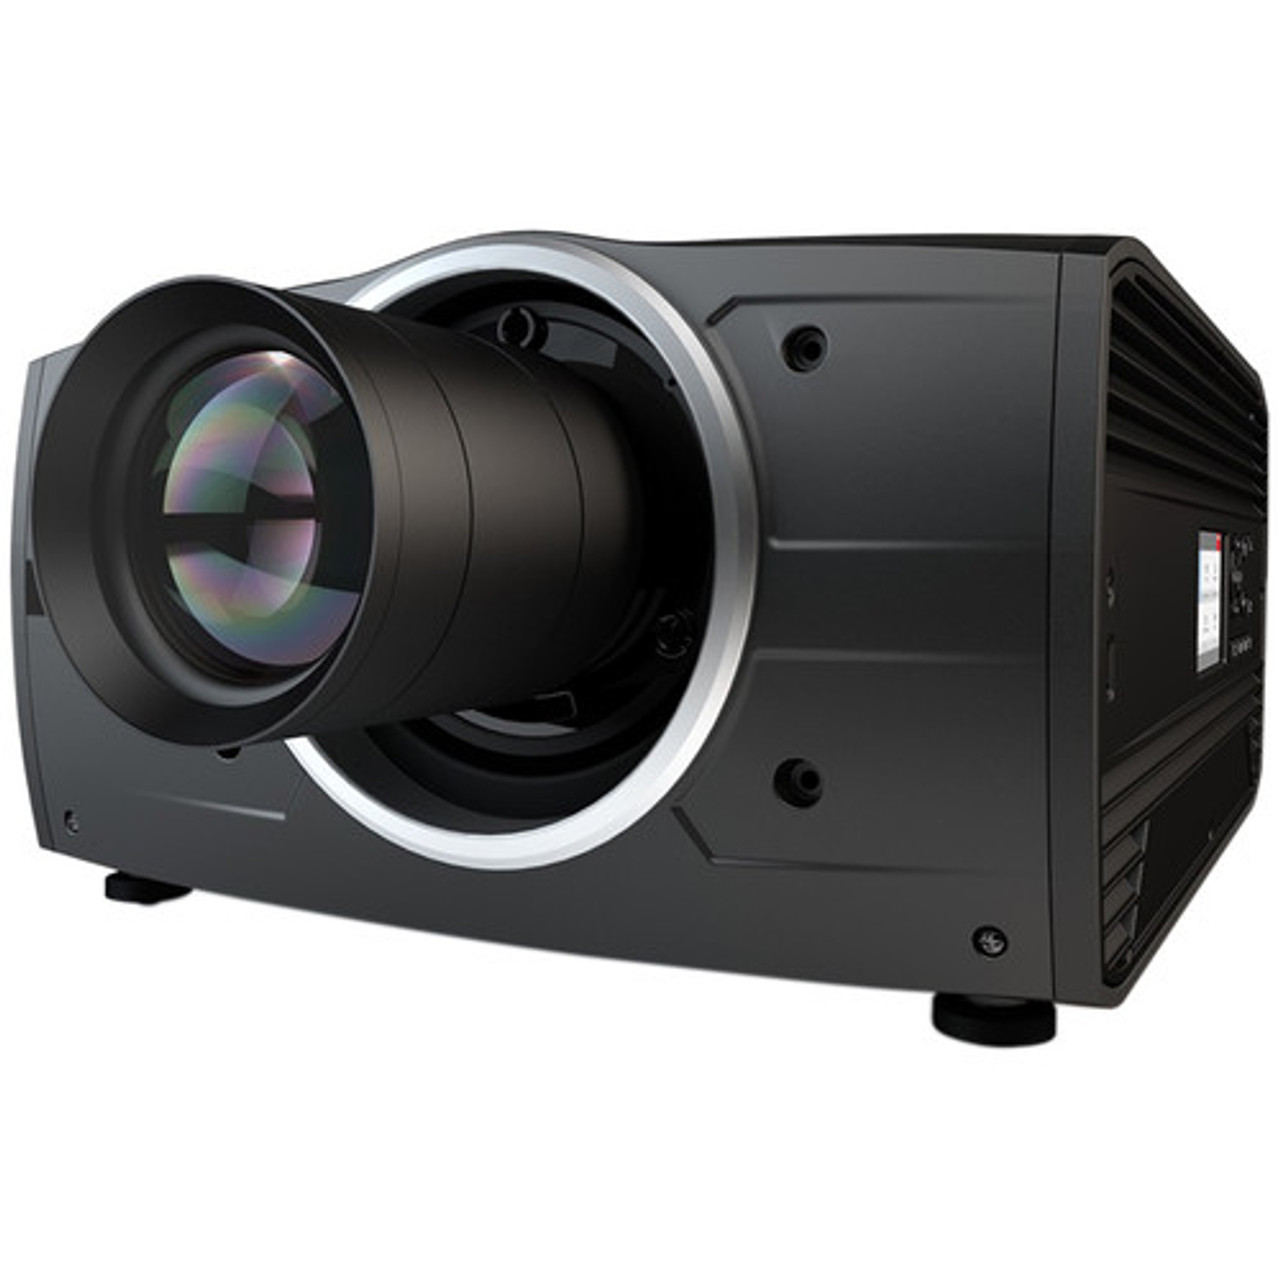 Meer Zelfrespect adelaar Barco F70-W8 8000-Lumen WUXGA Laser Projector